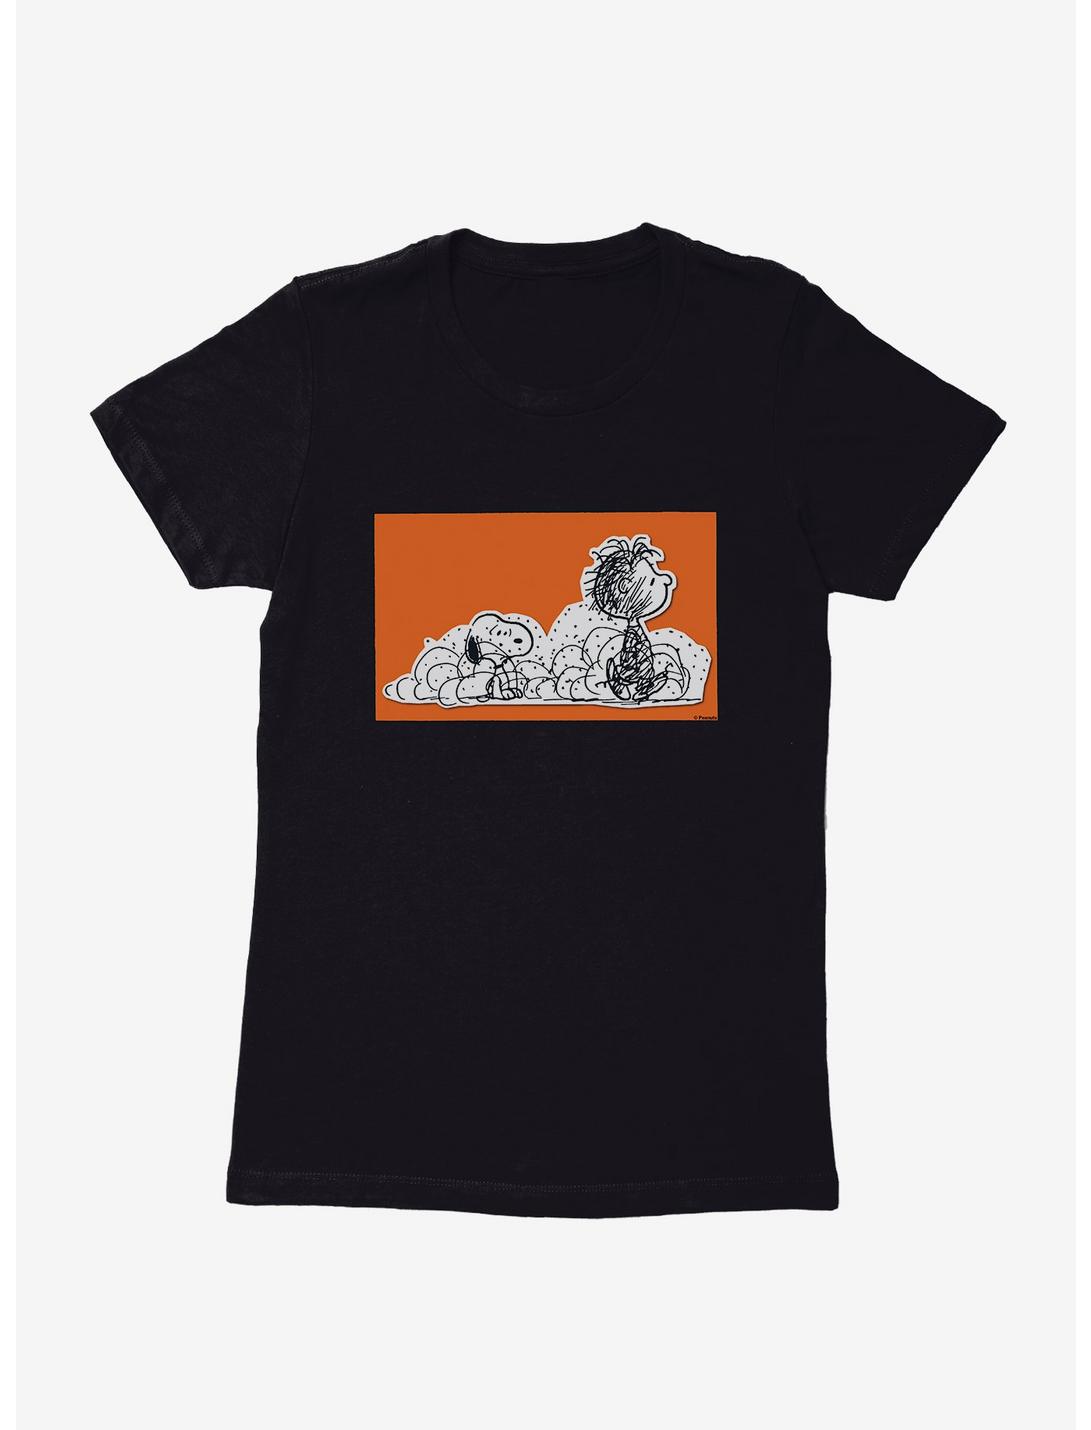 Peanuts Pig-Pen & Snoopy Womens T-Shirt, , hi-res